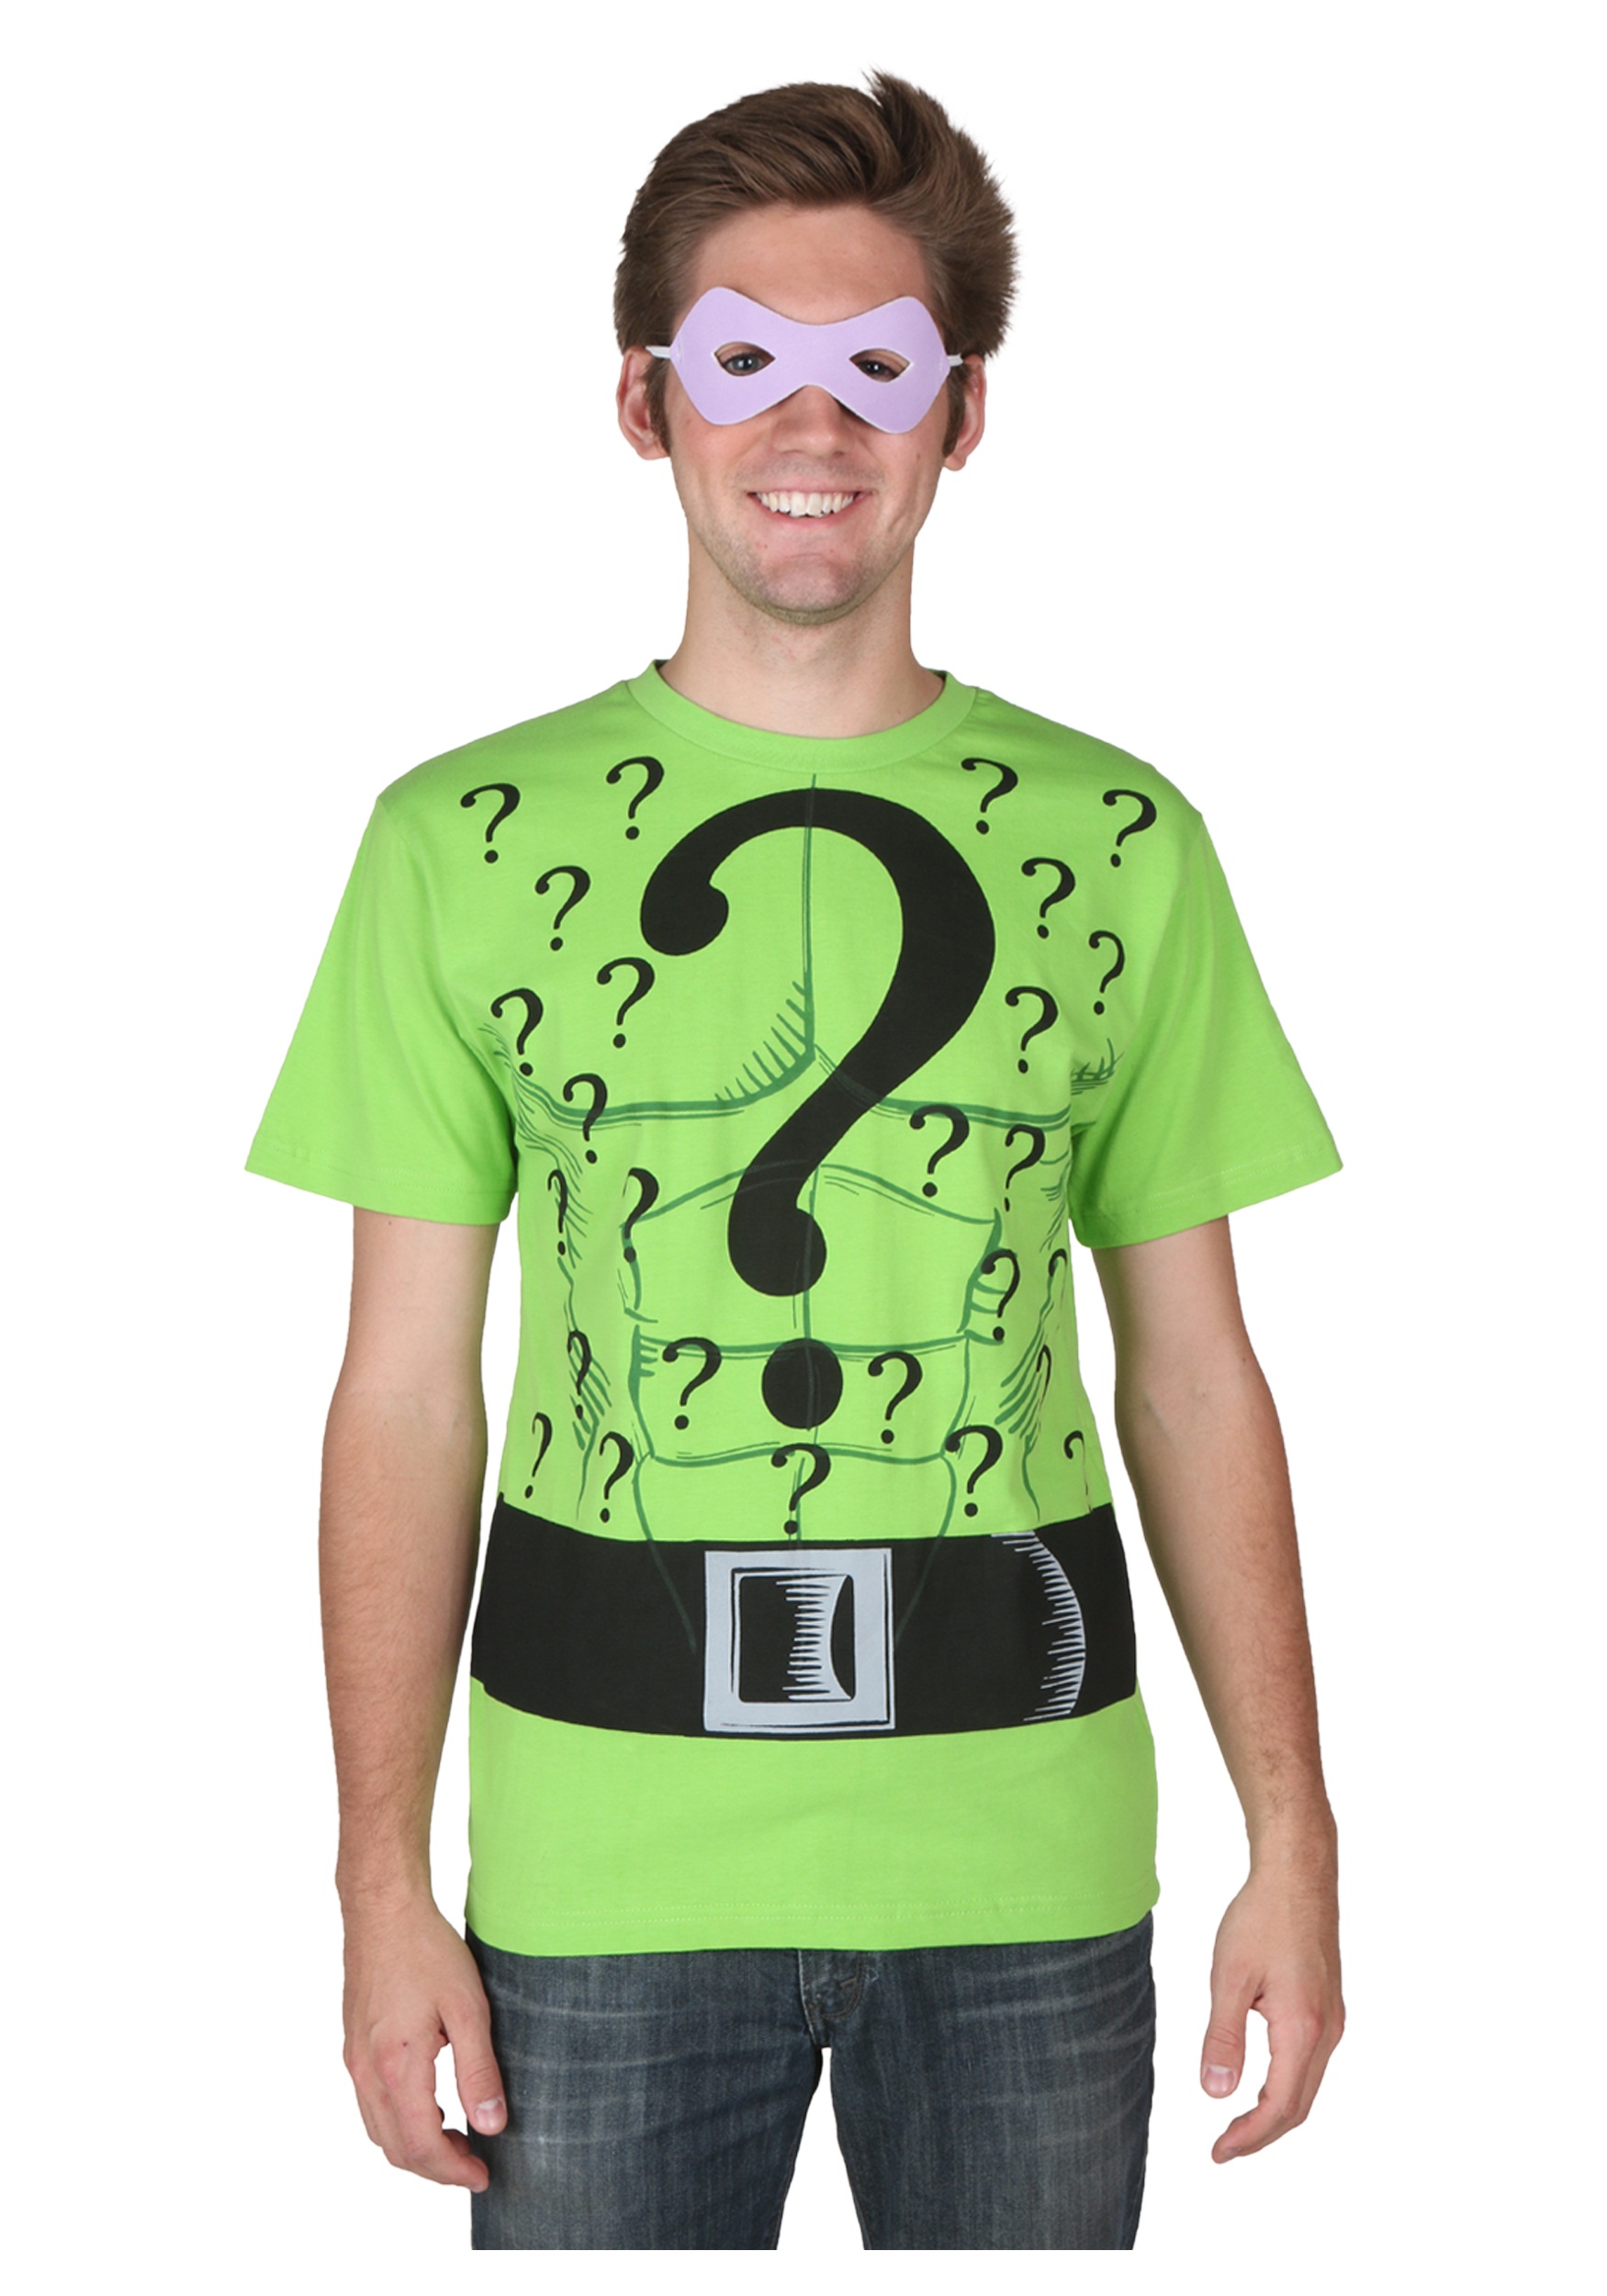 Riddler T-Shirt - Halloween Costume Ideas 2022.